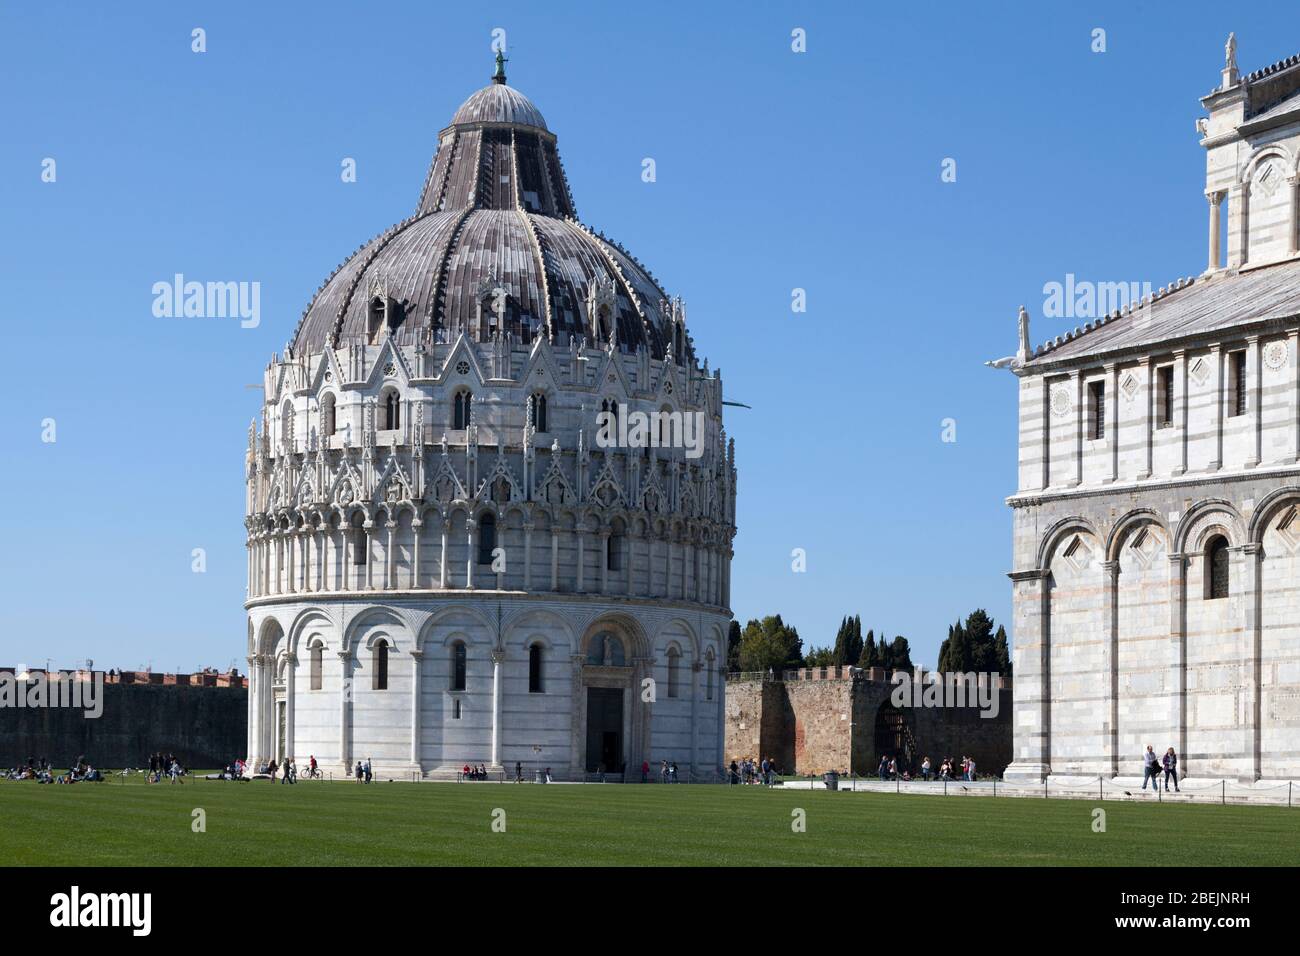 Pisa, Italia - Marzo 31 2019: Piazza dei Miracoli con il Battistero di Pisa, la Cattedrale di Pisa e una vista parziale delle mura della città. Foto Stock